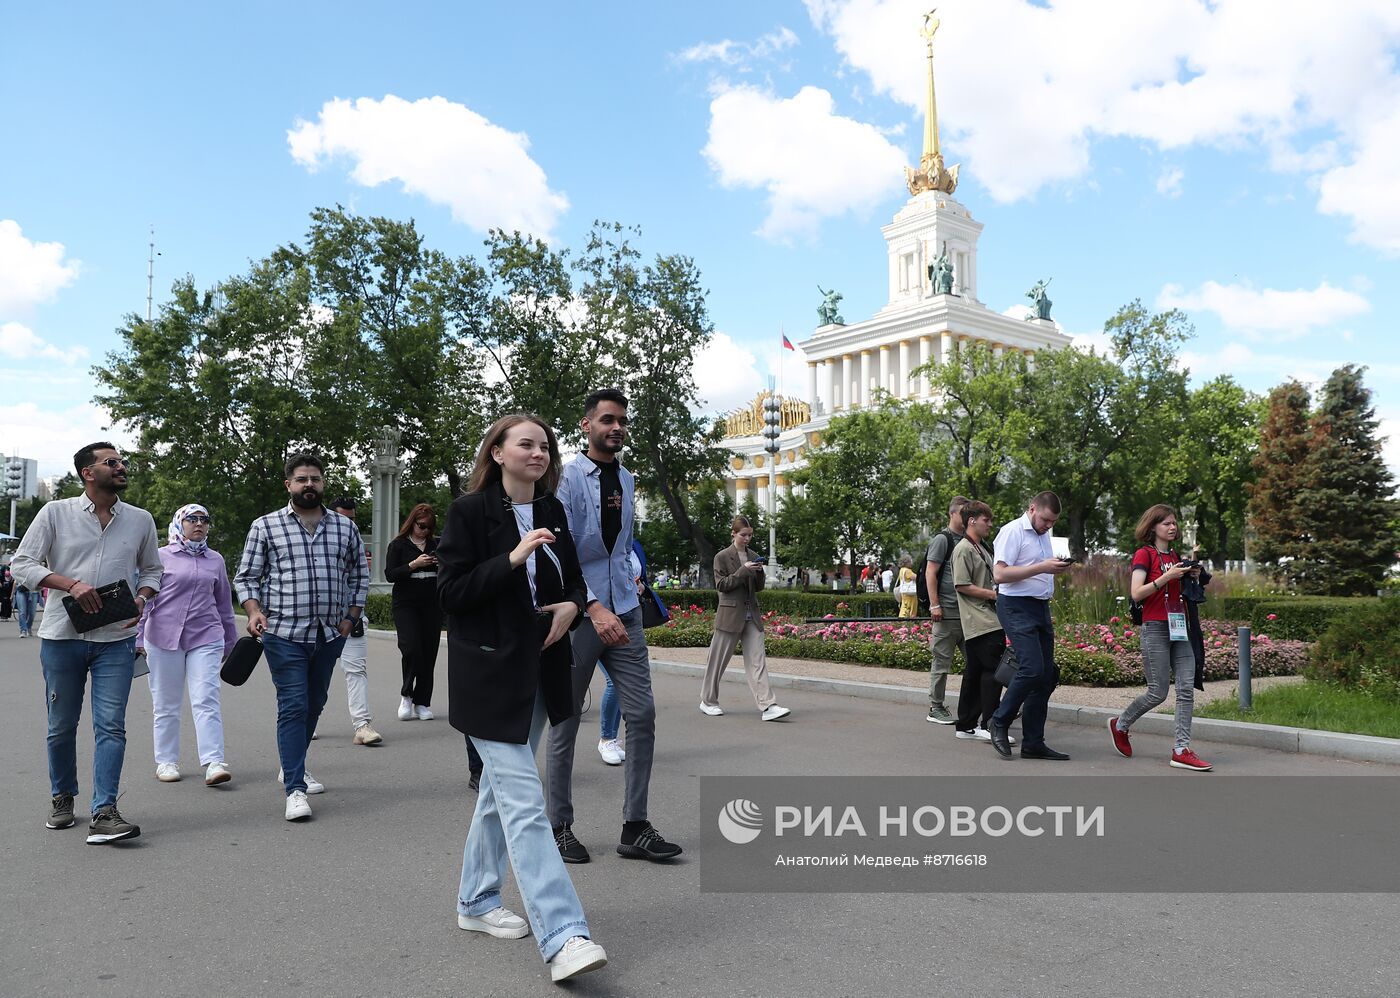 Выставка "Россия". Экскурсия для иностранных журналистов Russia Today